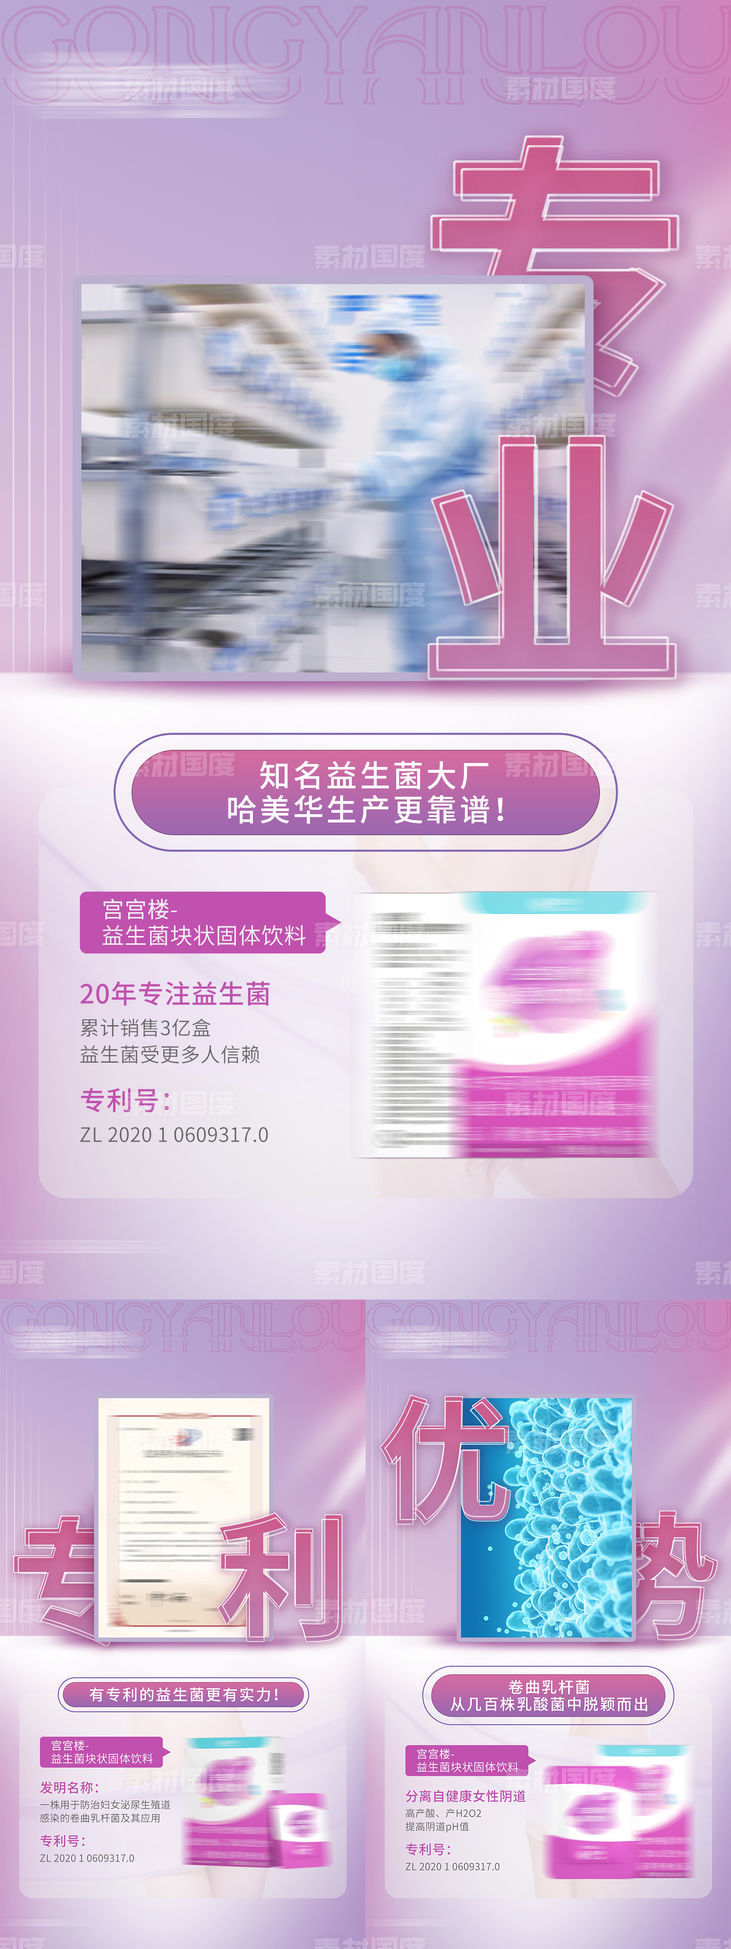 紫色女性私护产品背书海报